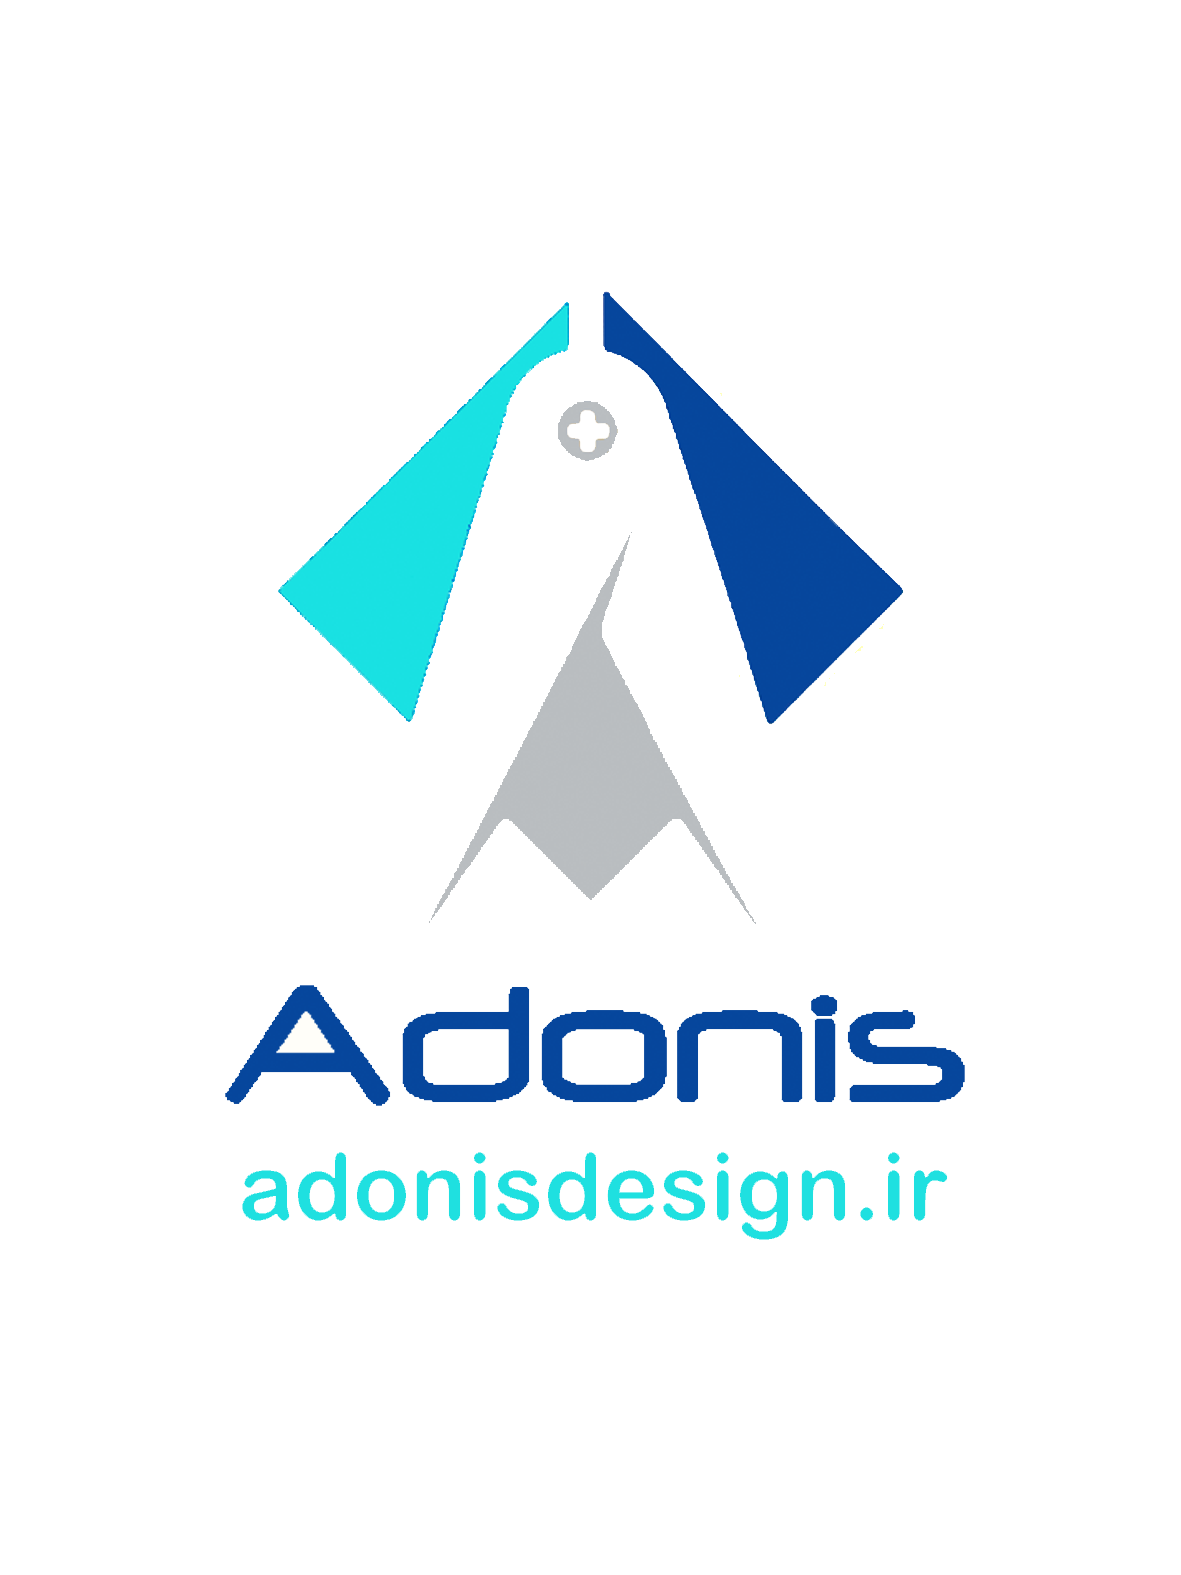 Adonis design